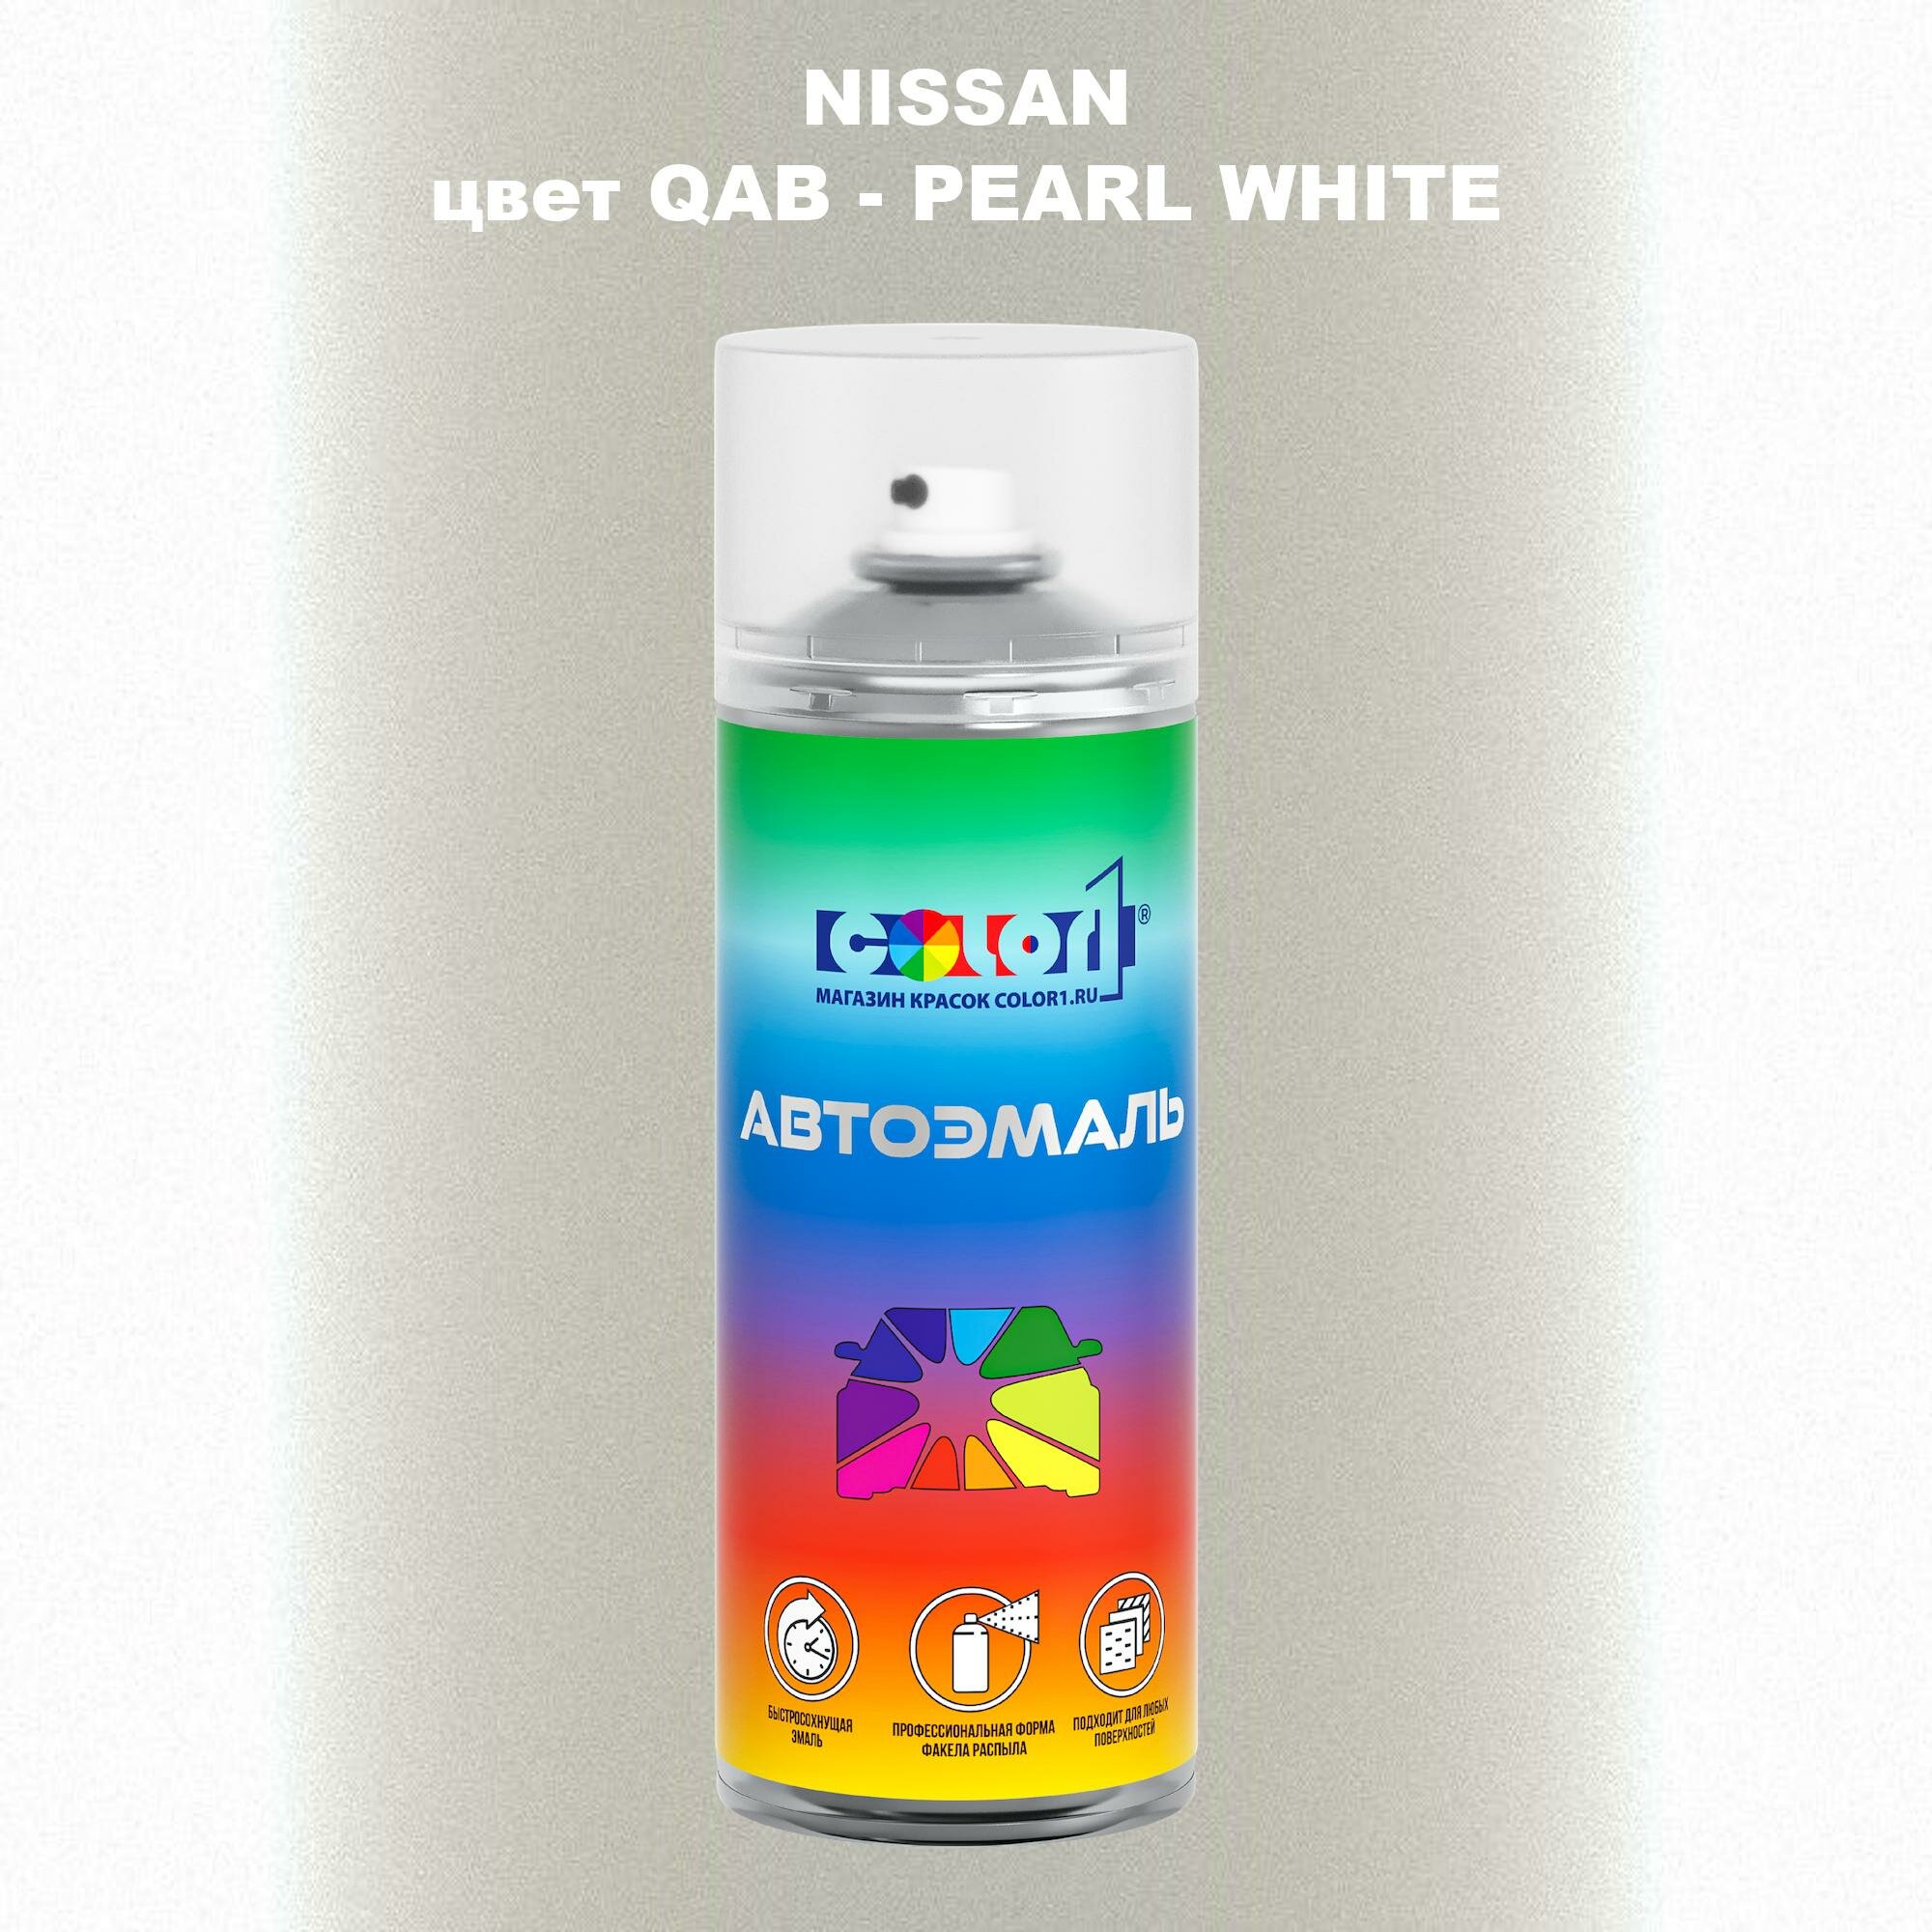 Аэрозольная краска COLOR1 для NISSAN, цвет QAB - PEARL WHITE